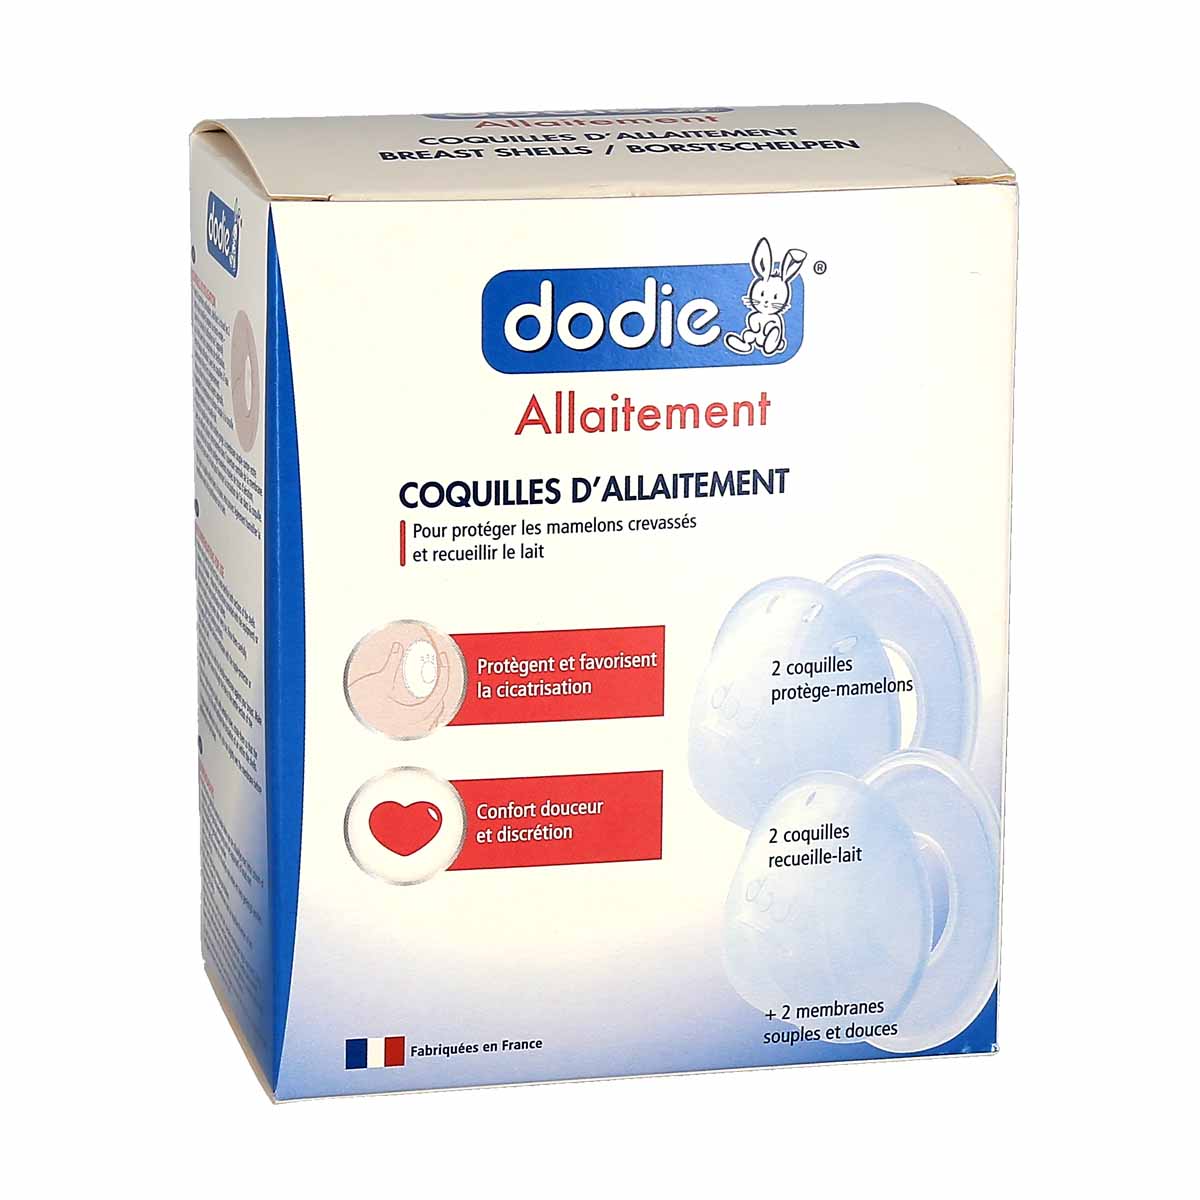 Dodie Allaitement Lanoline végétale - 40ml - Pharmacie en ligne